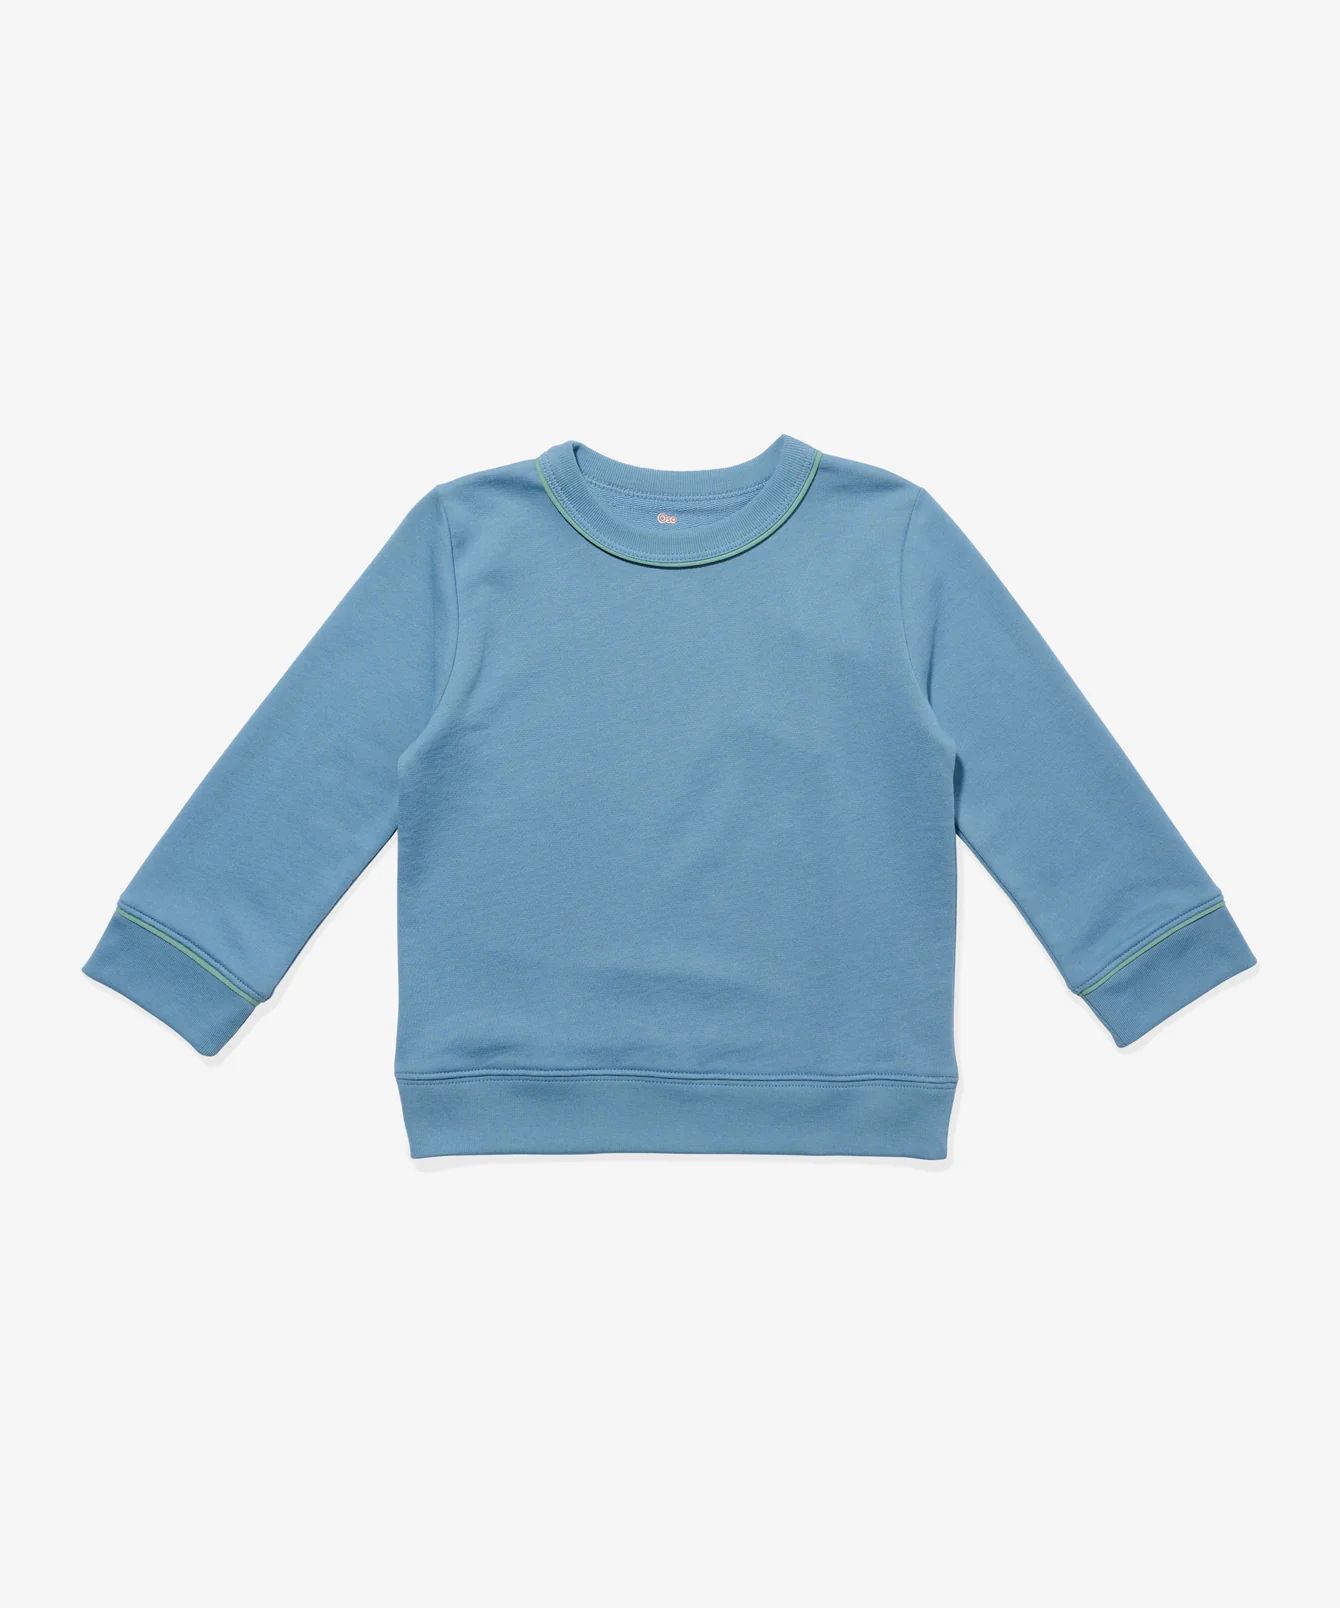 Stylish Boy or Girl Kid's Sweatshirt | Oso and Me | Oso & Me